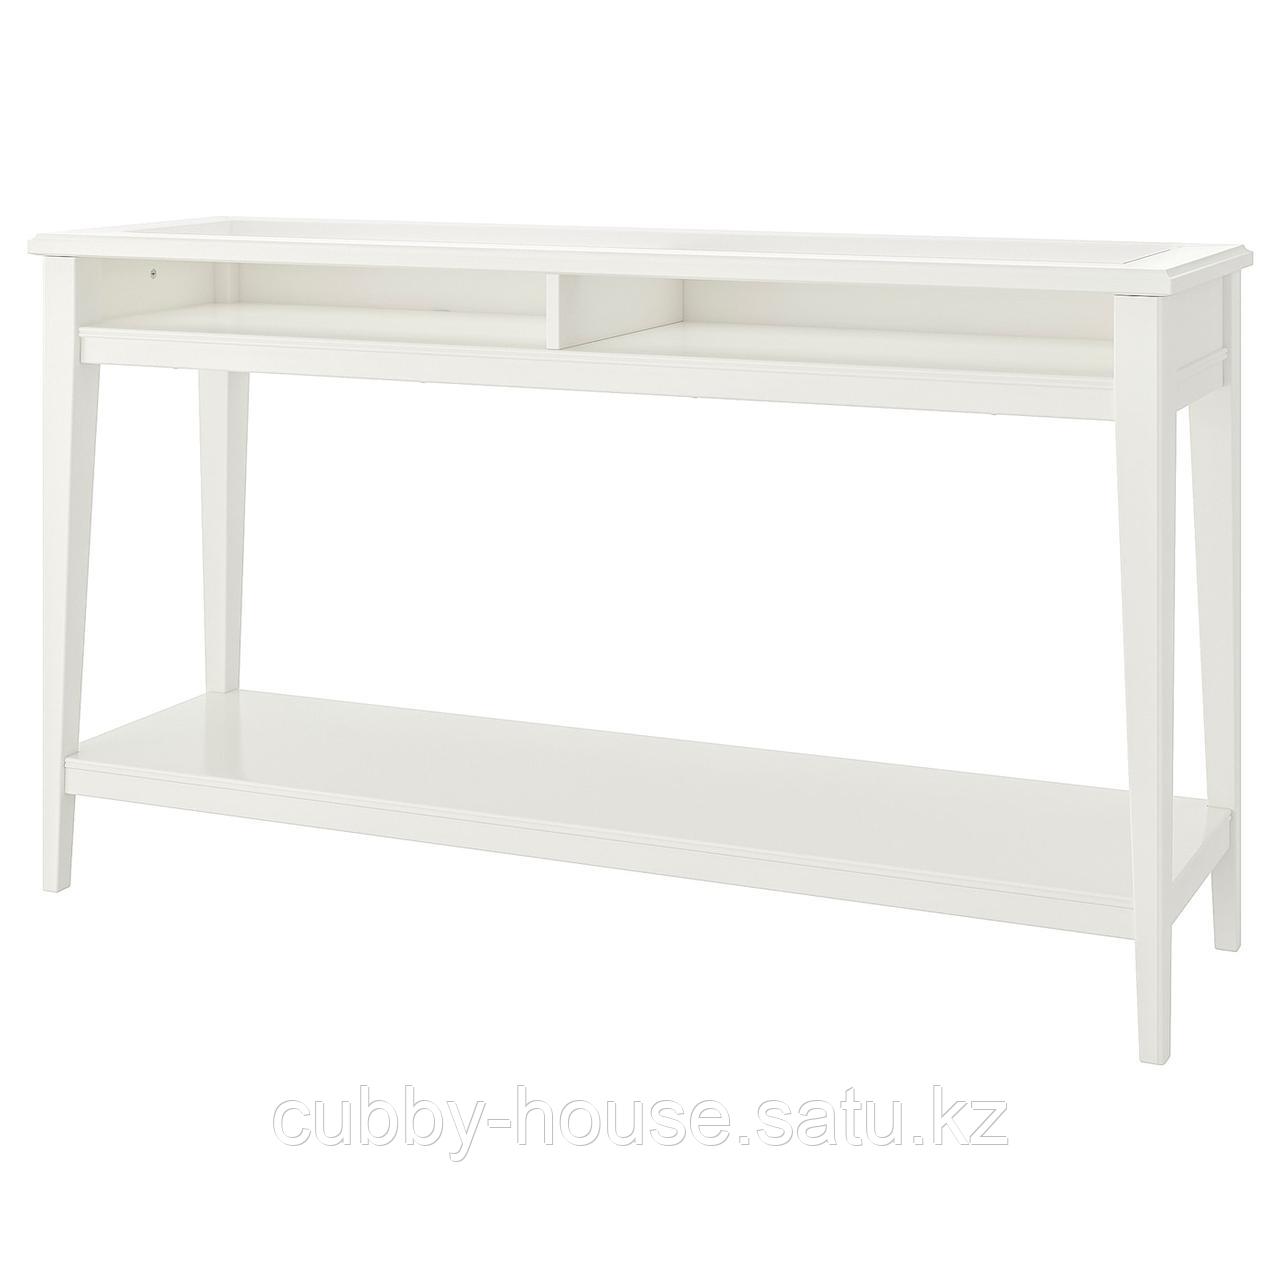 ЛИАТОРП Консольный стол, белый, стекло, 133x37 см